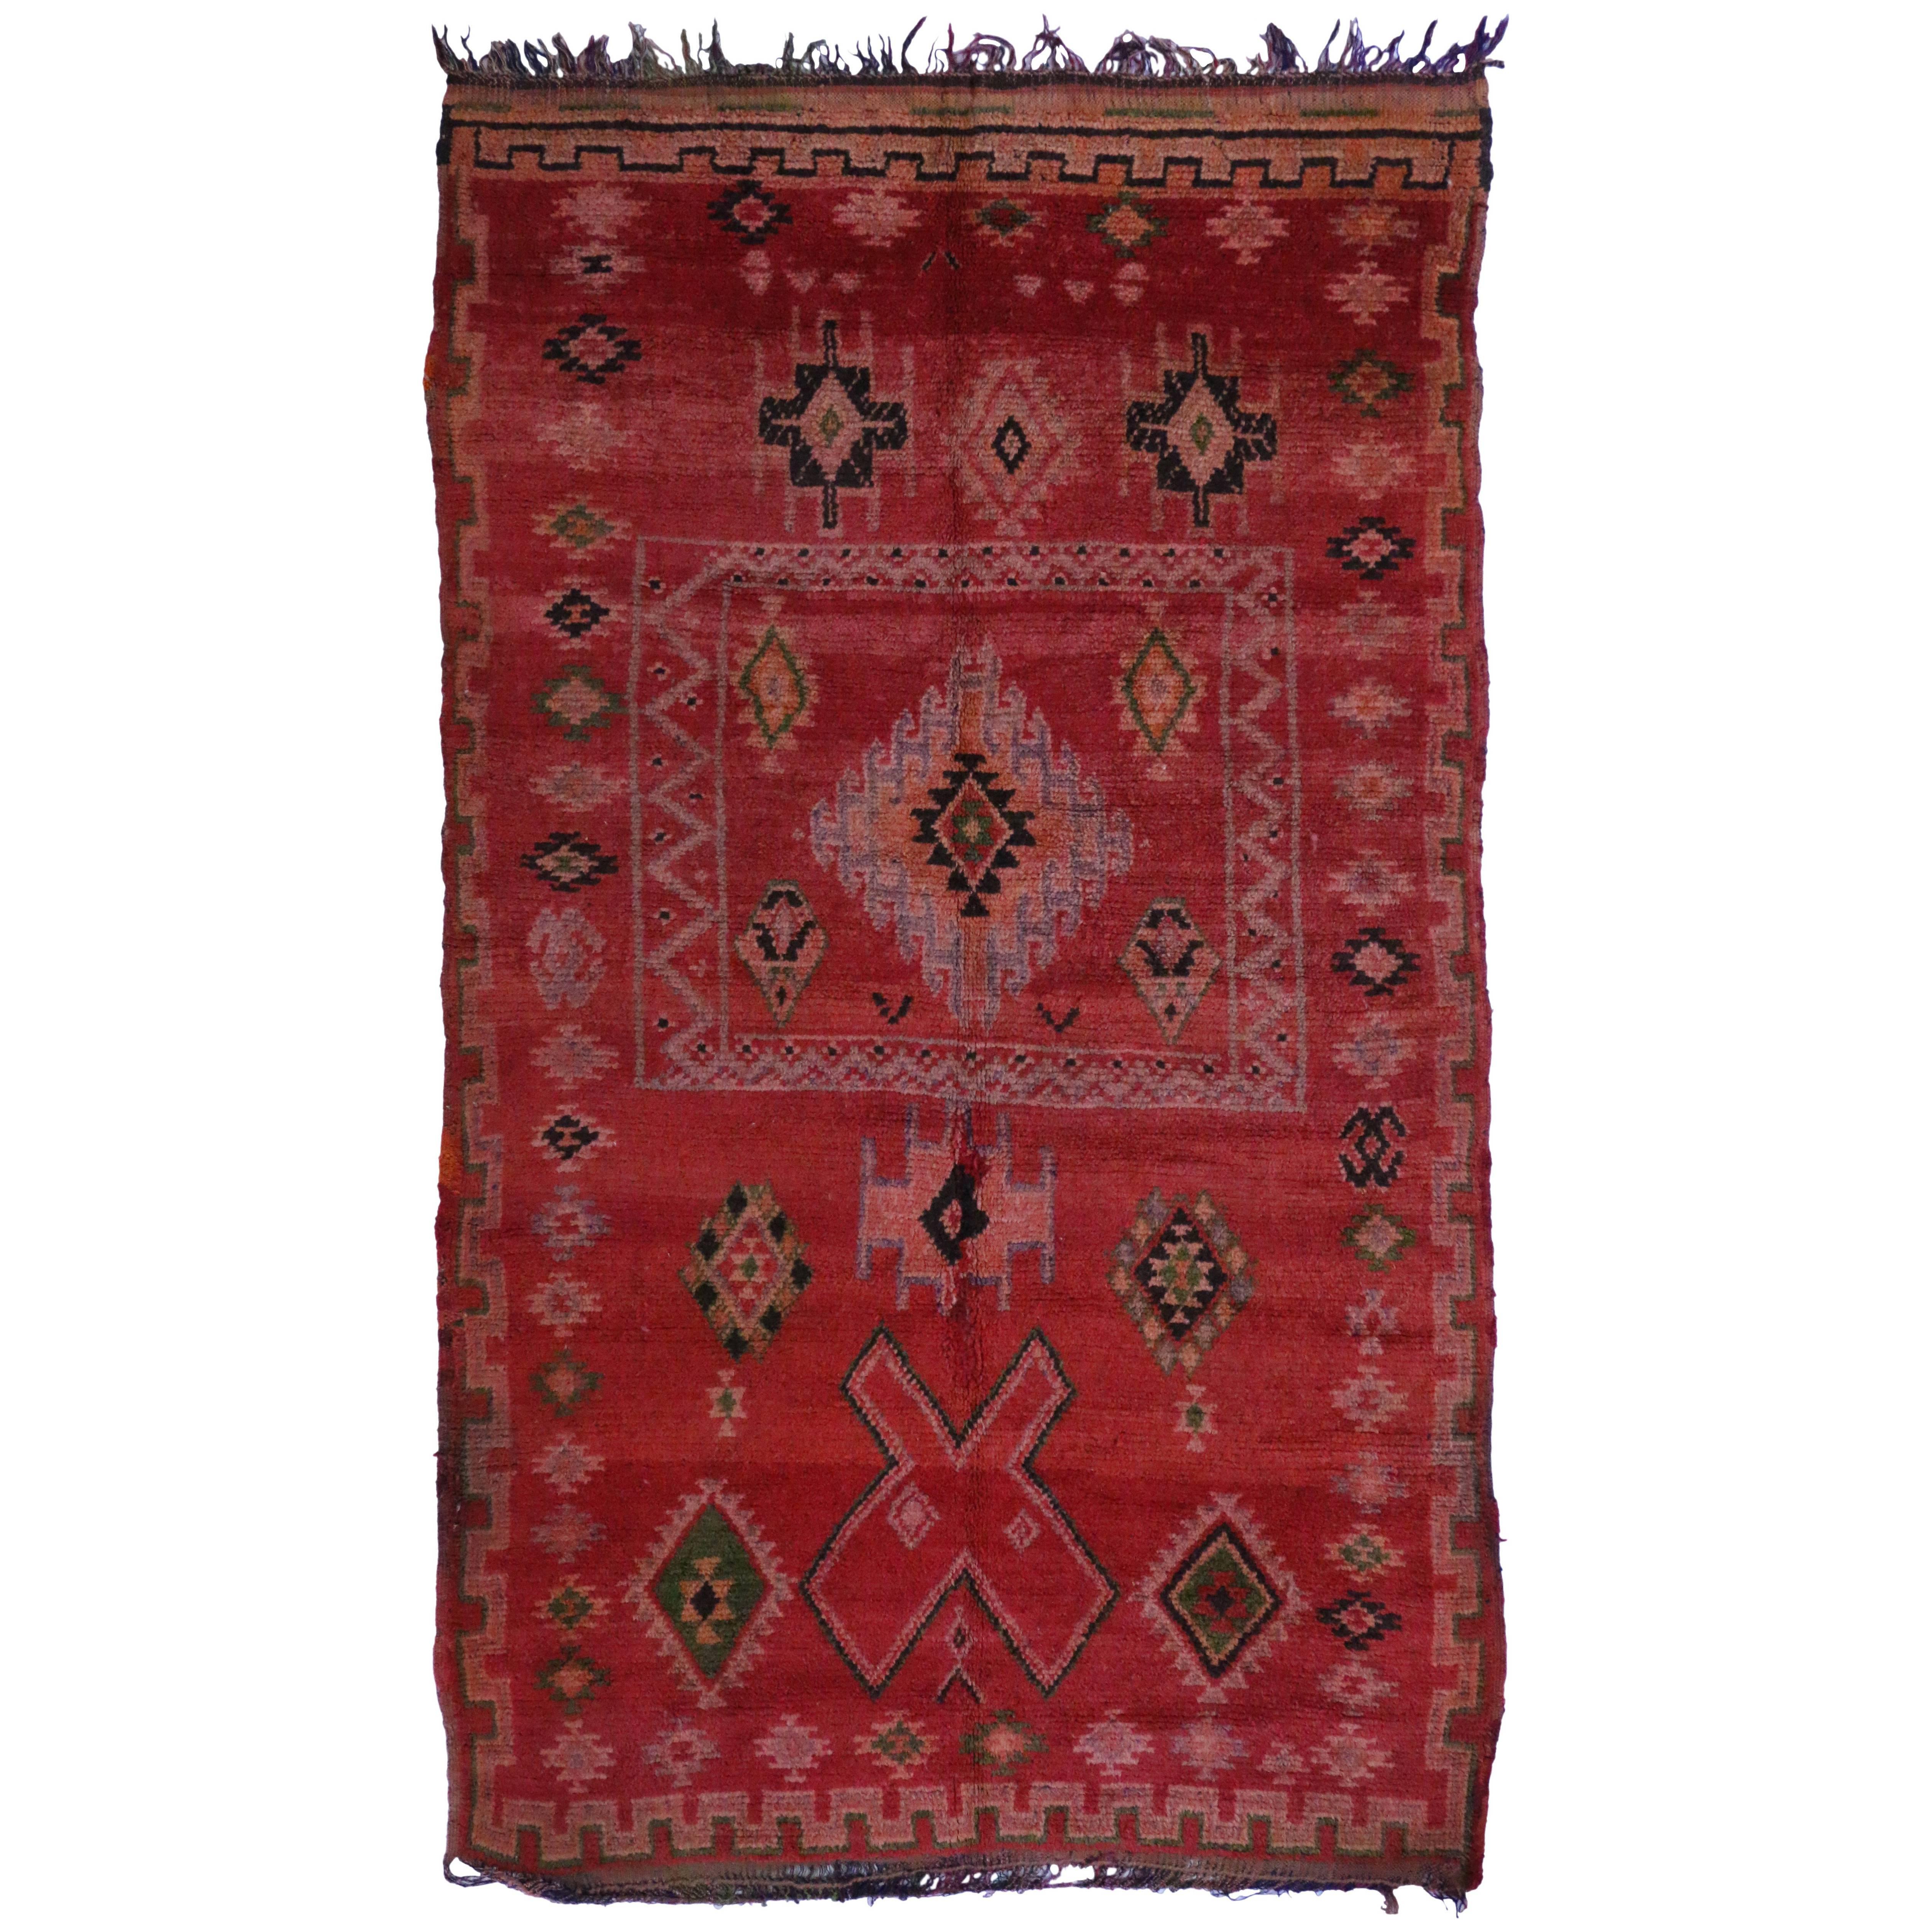 Vintage Berber Moroccan Rug with Modern Tribal Design